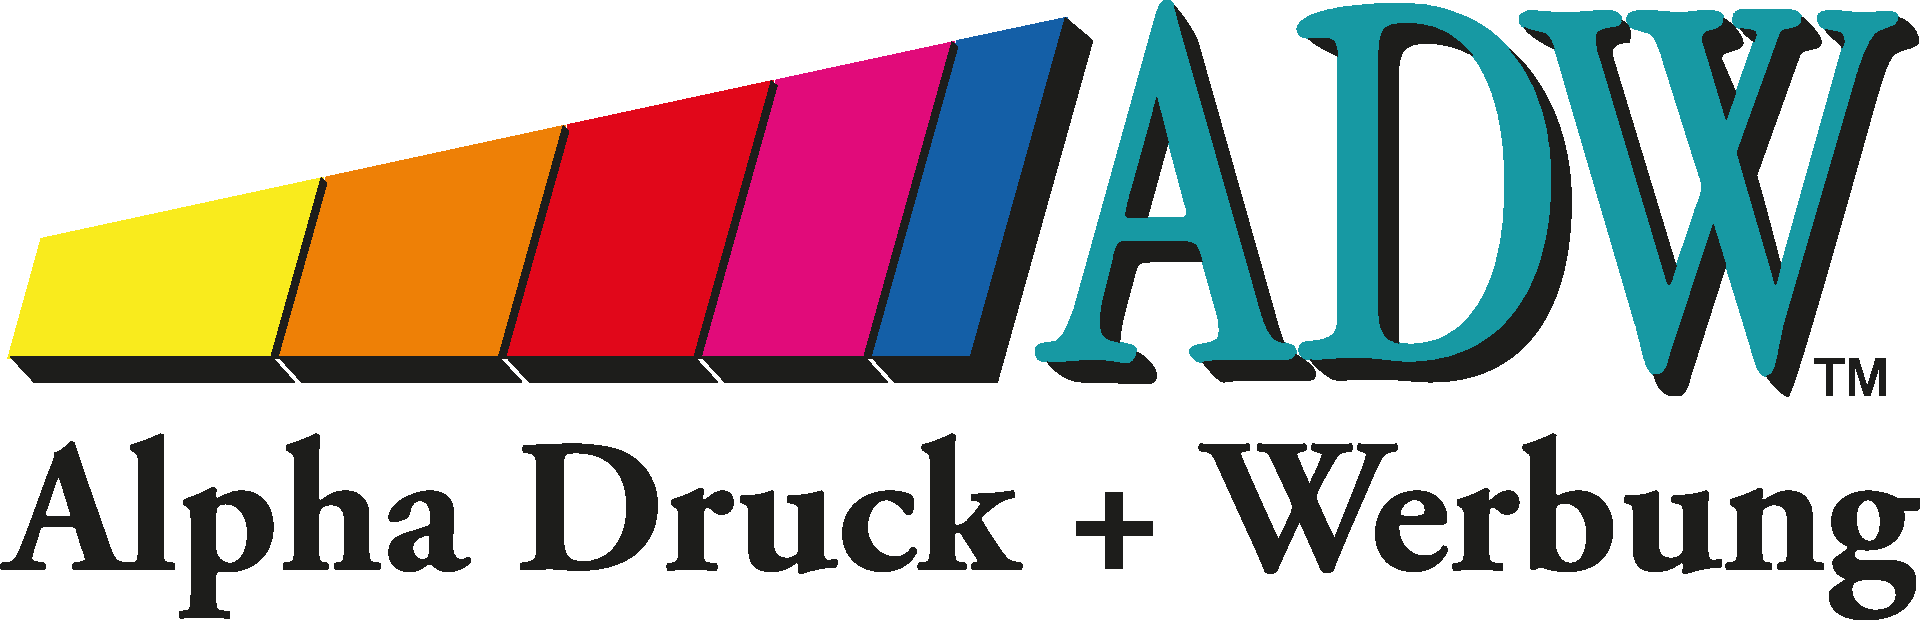 Alpha Druck + Werbung Elmshorn Leistungen Logo 04